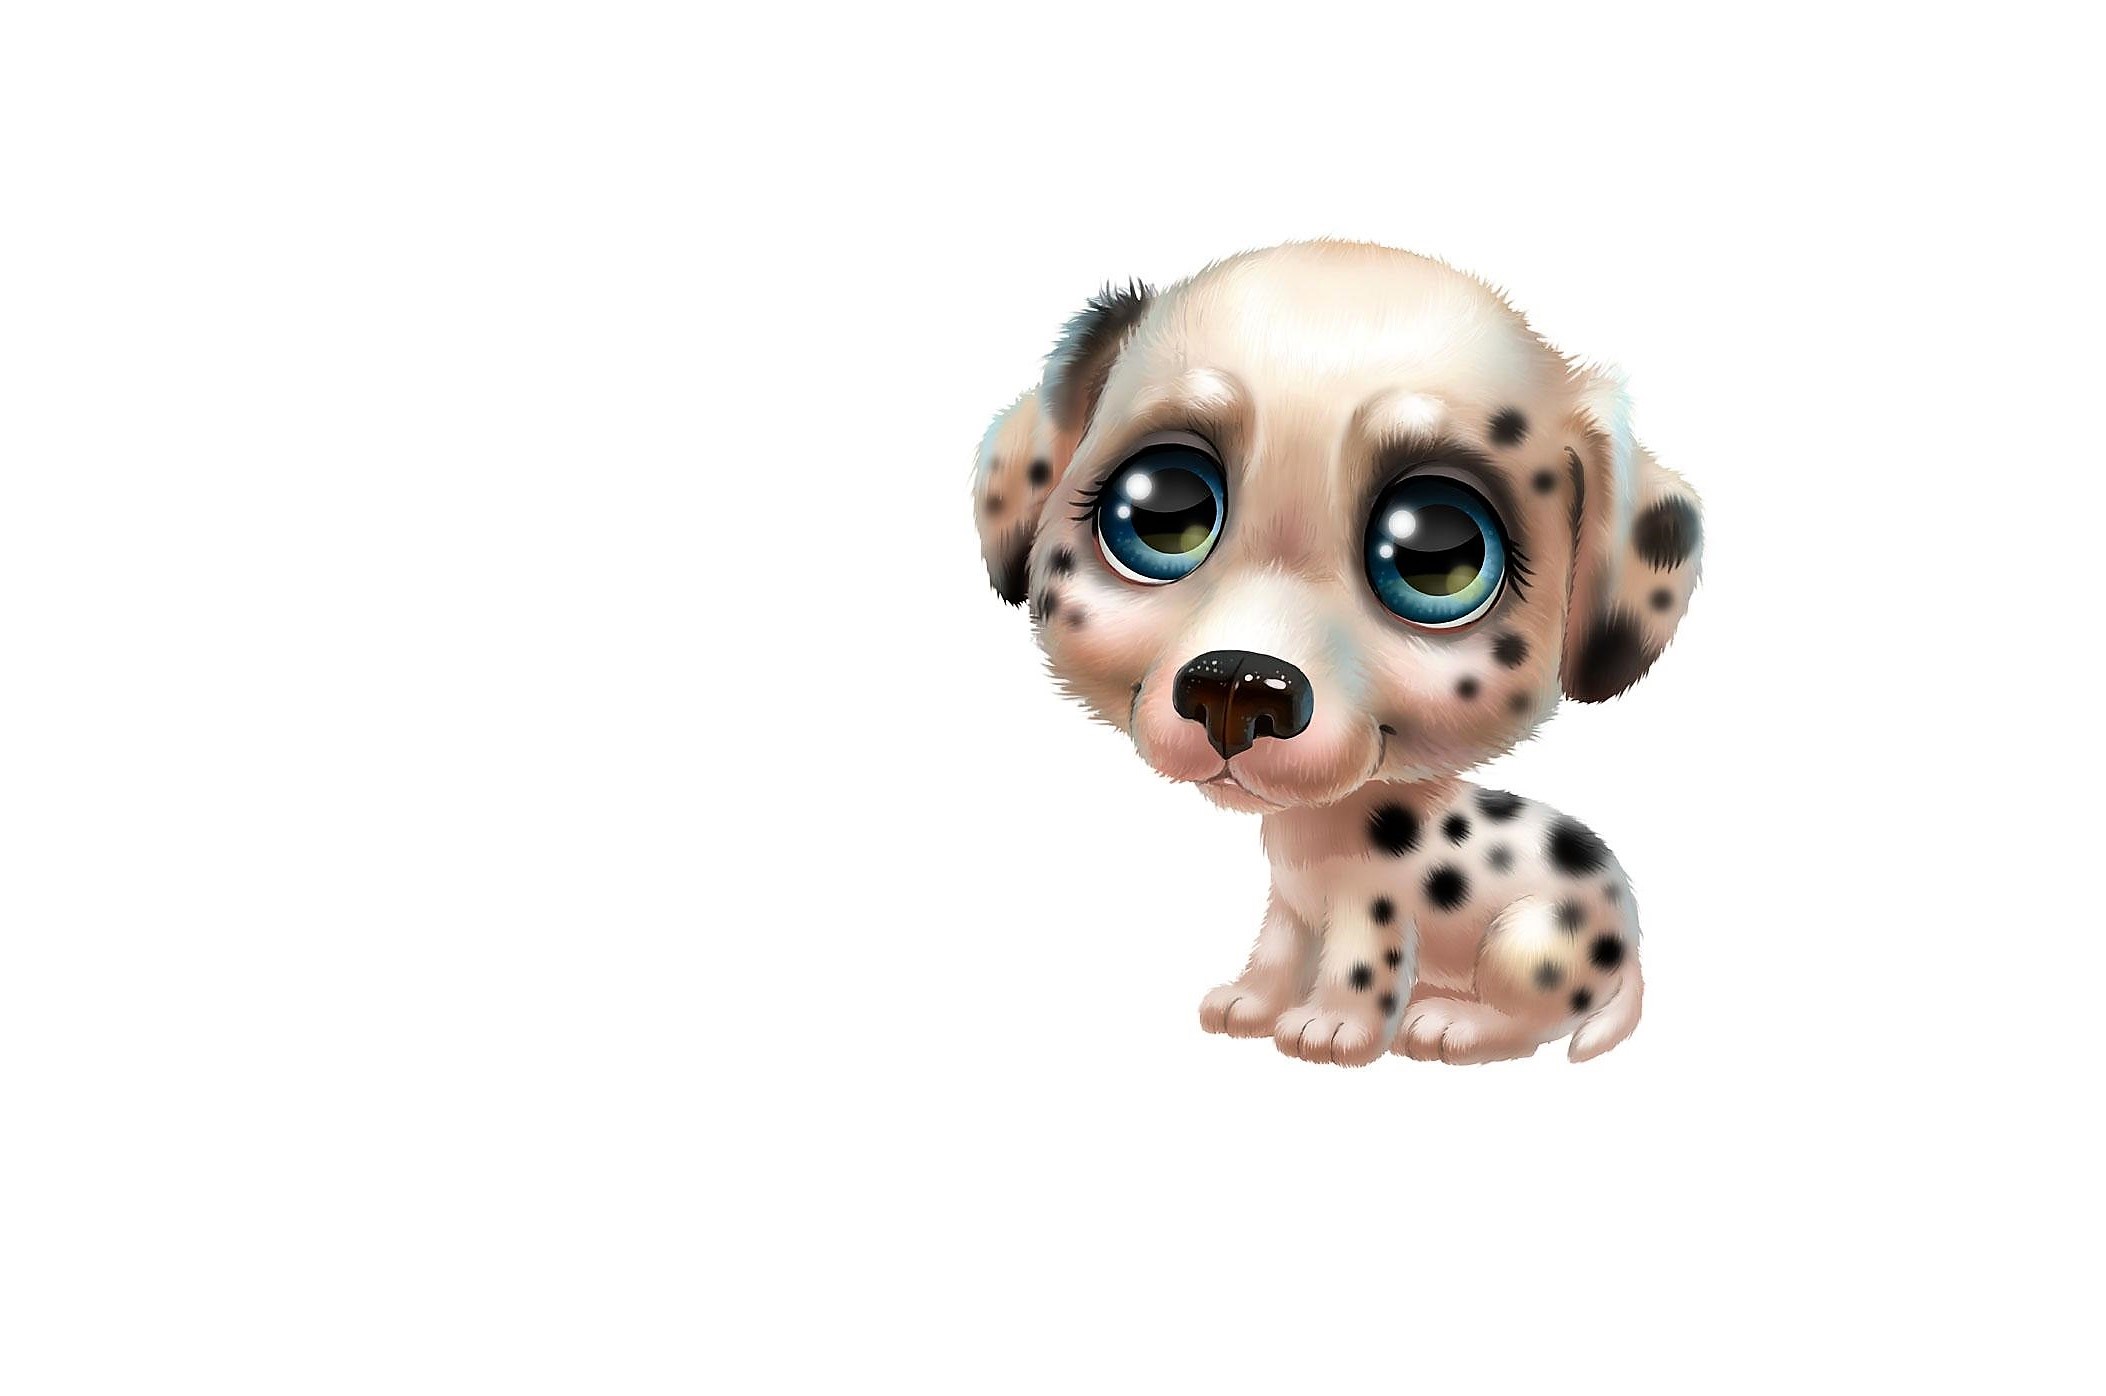 Artistic Blue Eyes Dalmatian Dog Puppy 2106x1396